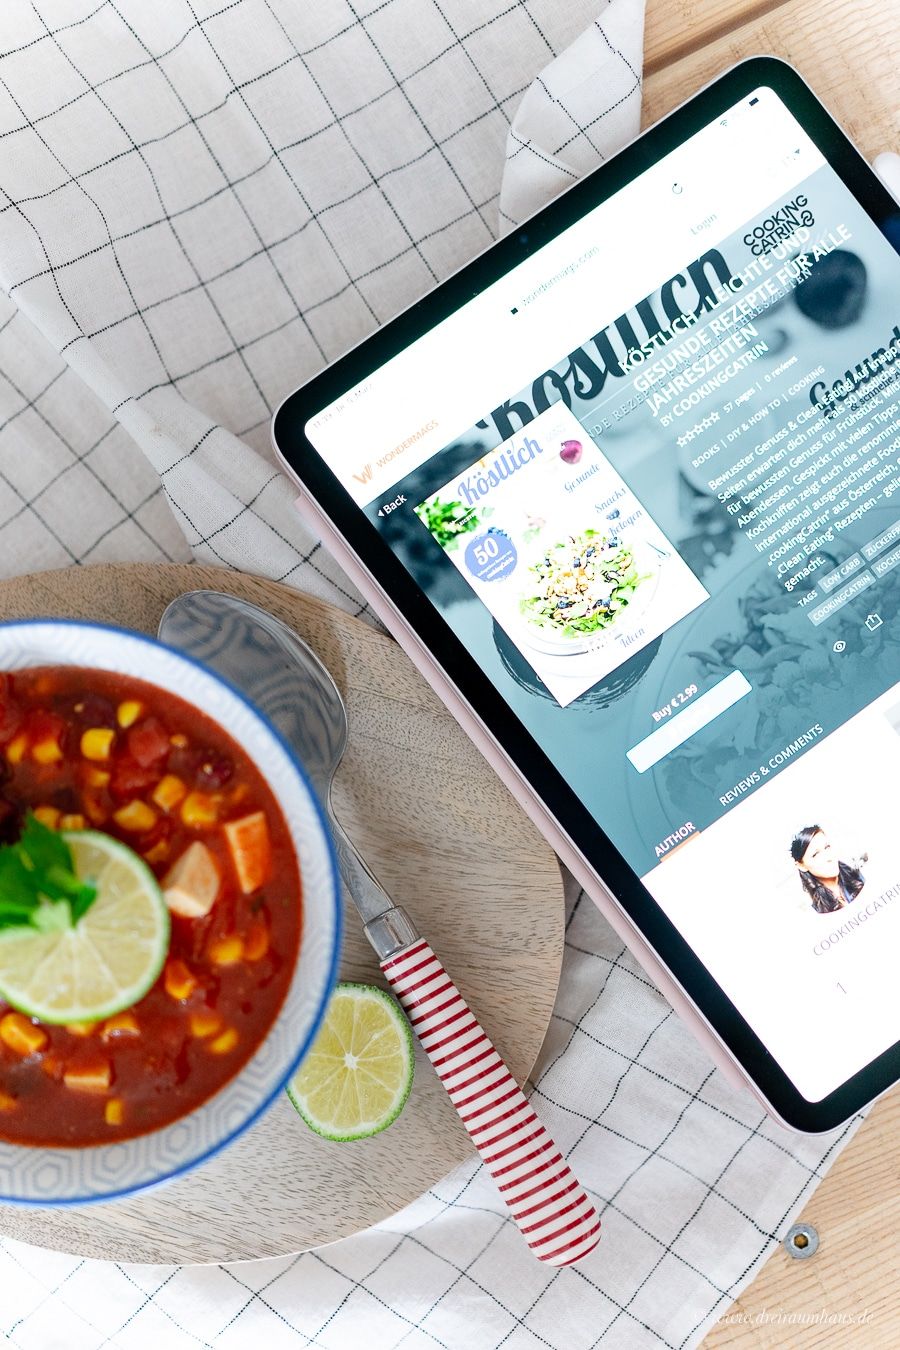 Self Publishing leicht gemacht! cookingCatrin mit ihrem Online-Magazin bei wondermags und ein veganes Chili!